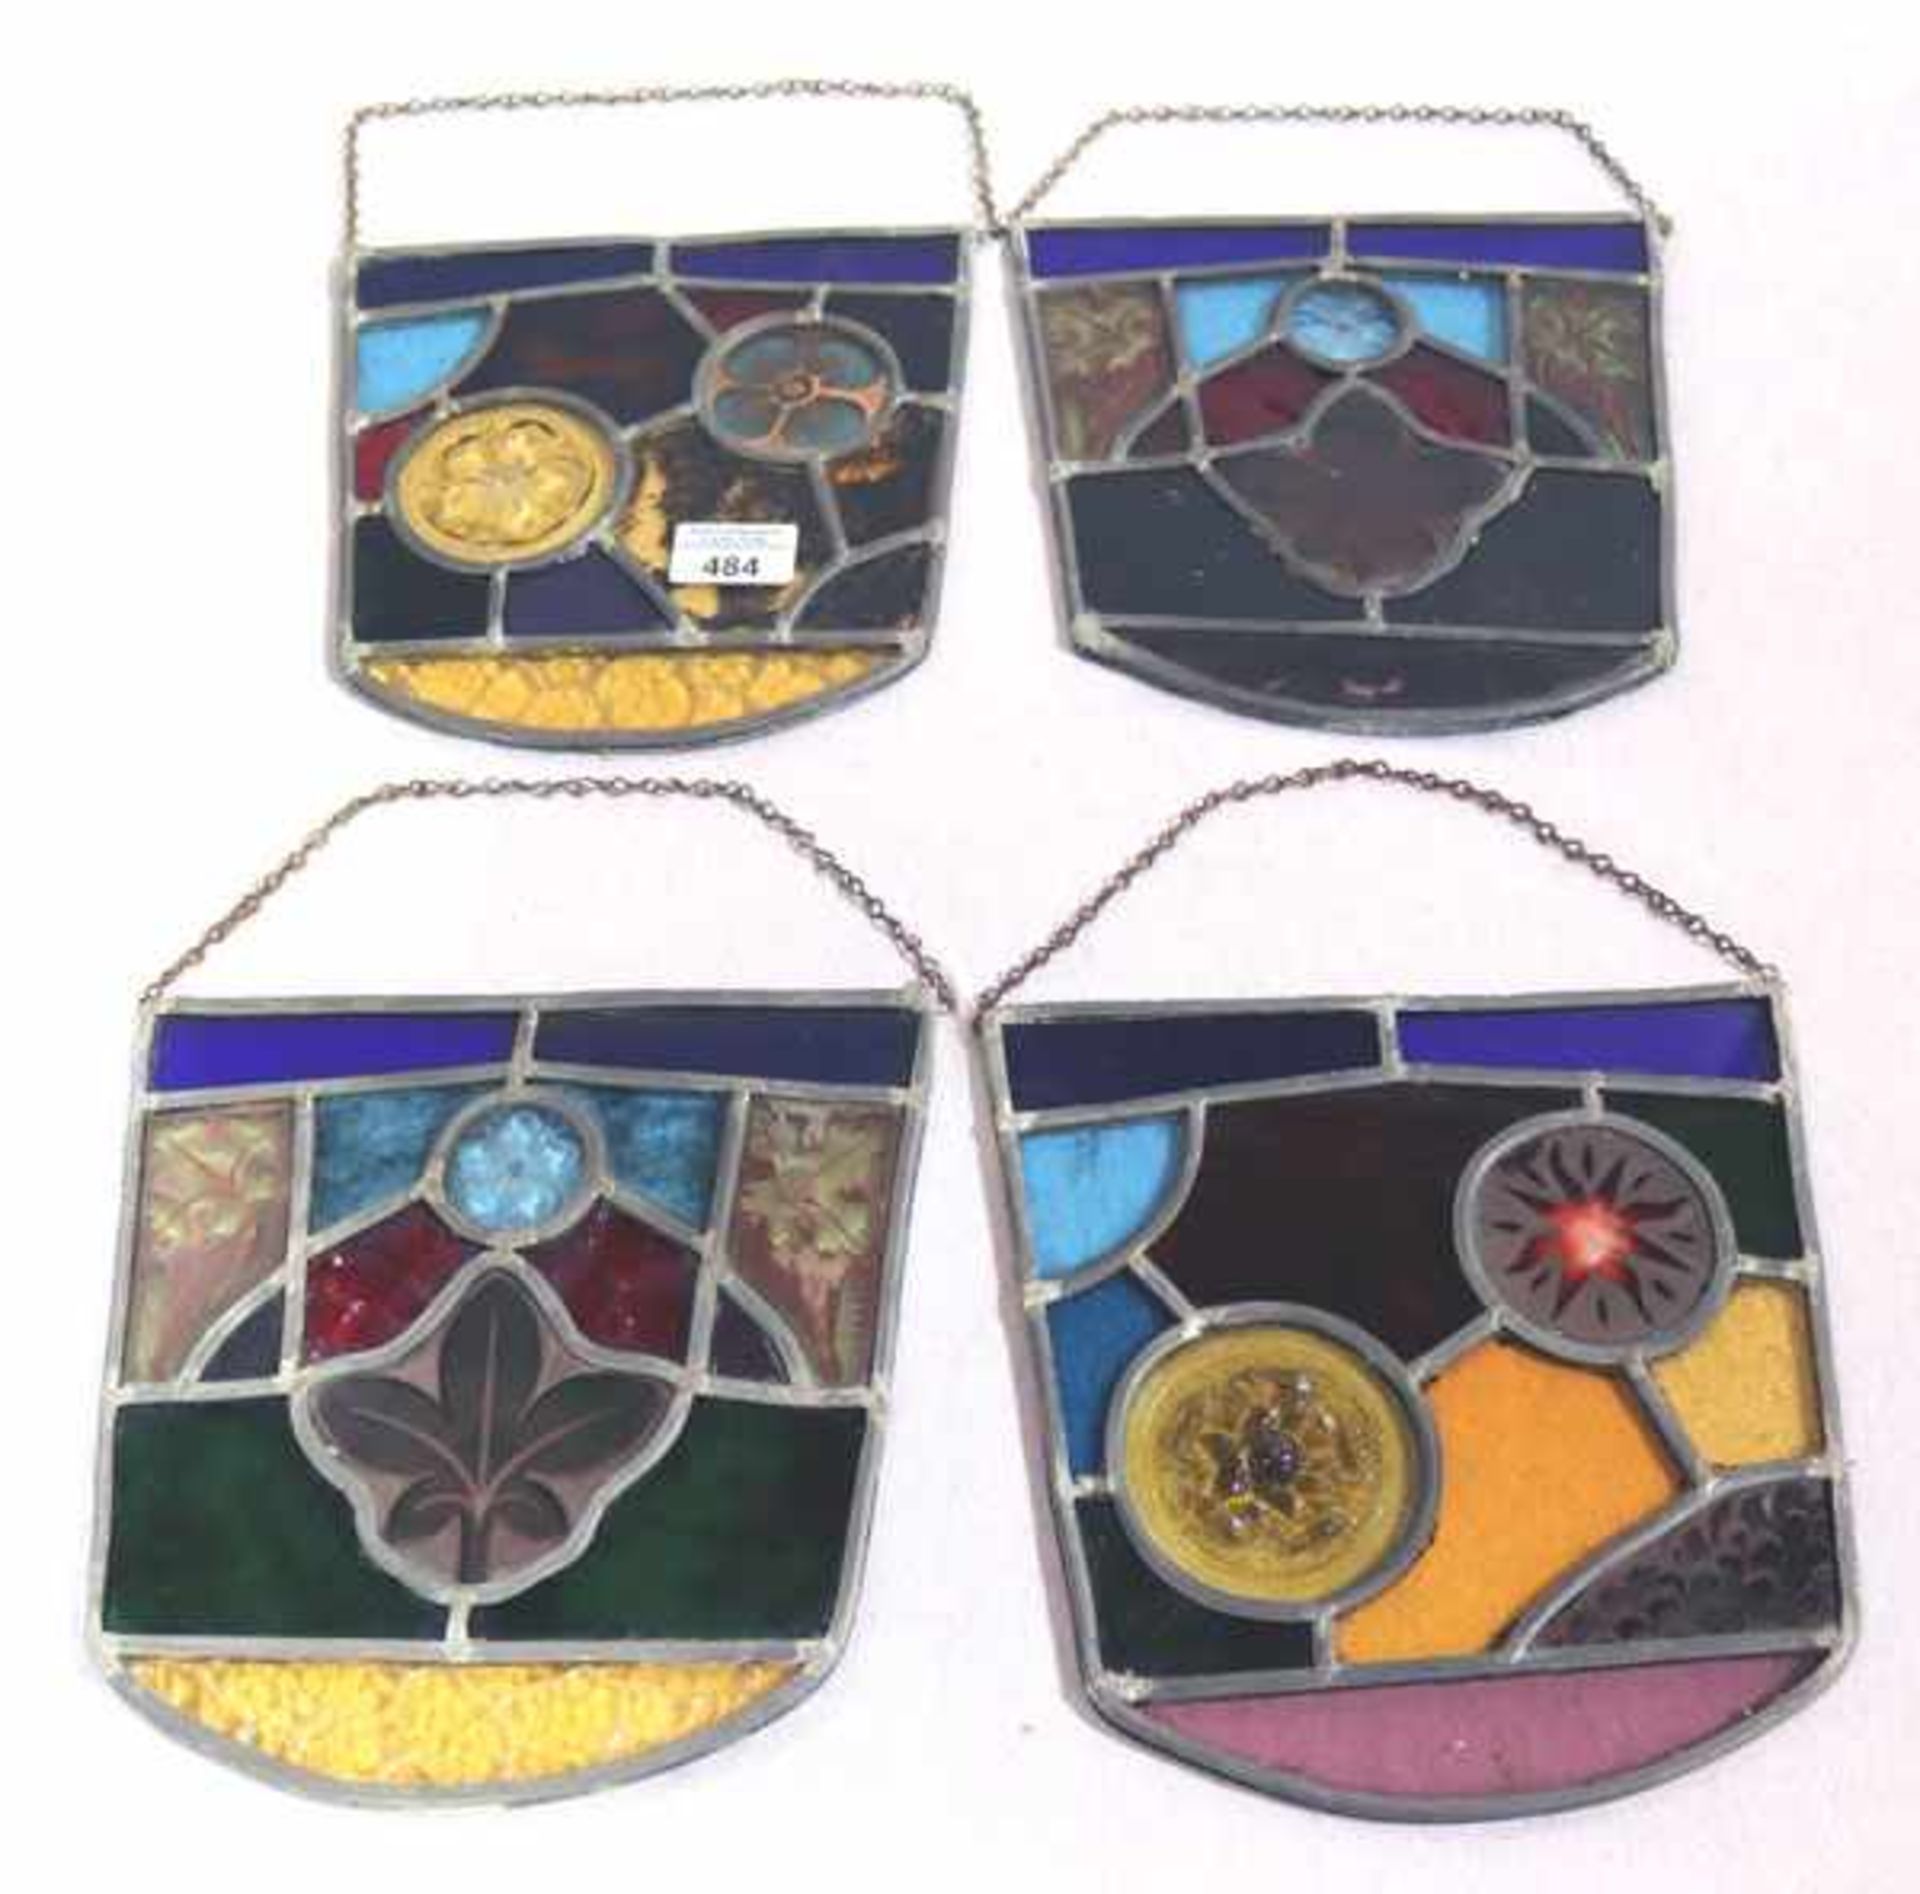 4 dekorative Glas-Fensterbilder in verschiedenen Dekoren und Farben, H 22 cm, B 22 cm, gut erhalten